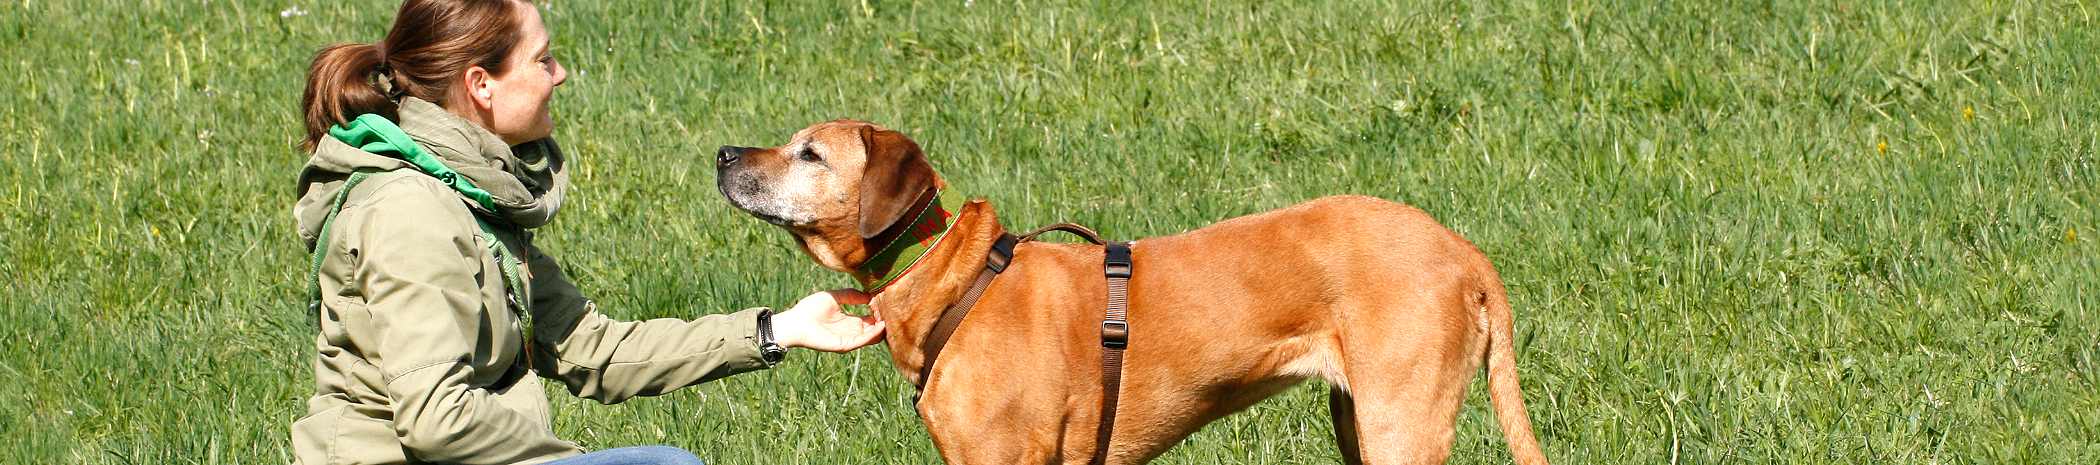 Überweisungspraxis für Verhaltensmedizin und Physiotherapie Hund Mensch verstehen